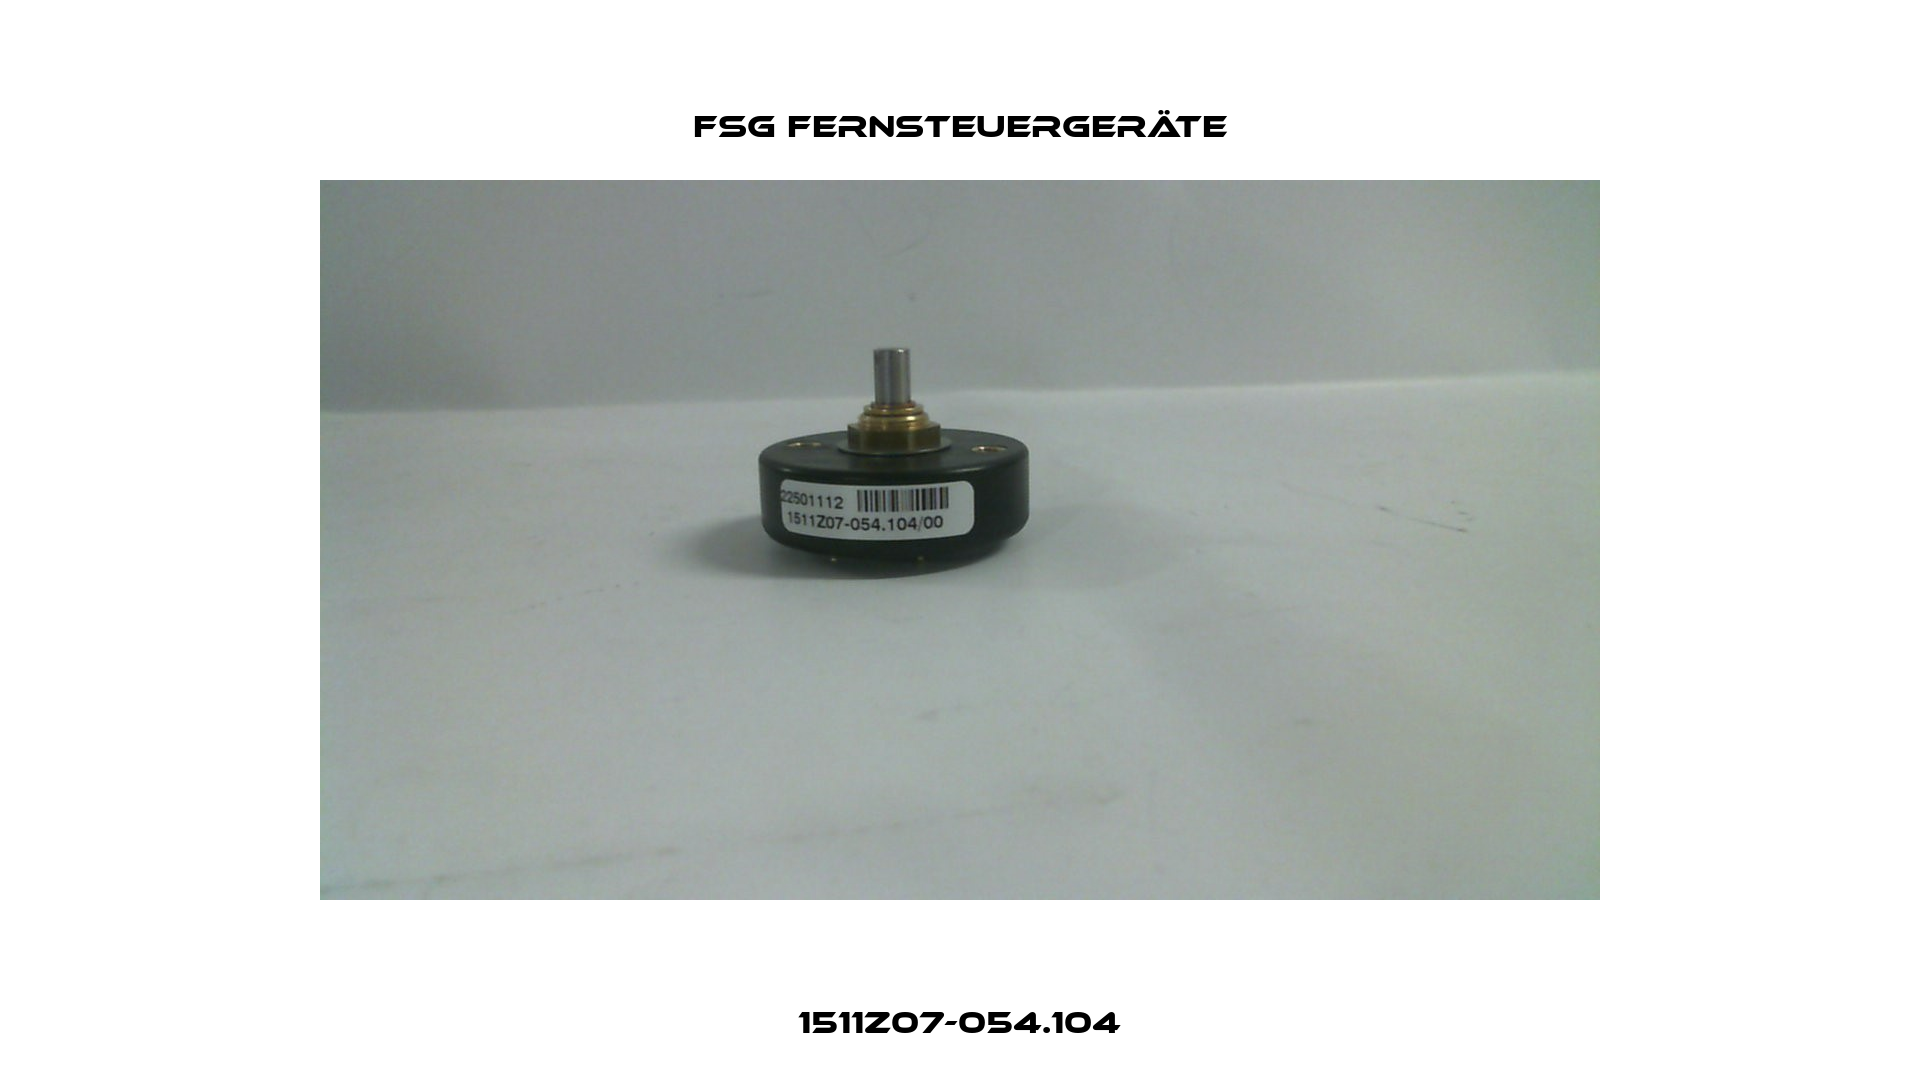 1511Z07-054.104 FSG Fernsteuergeräte